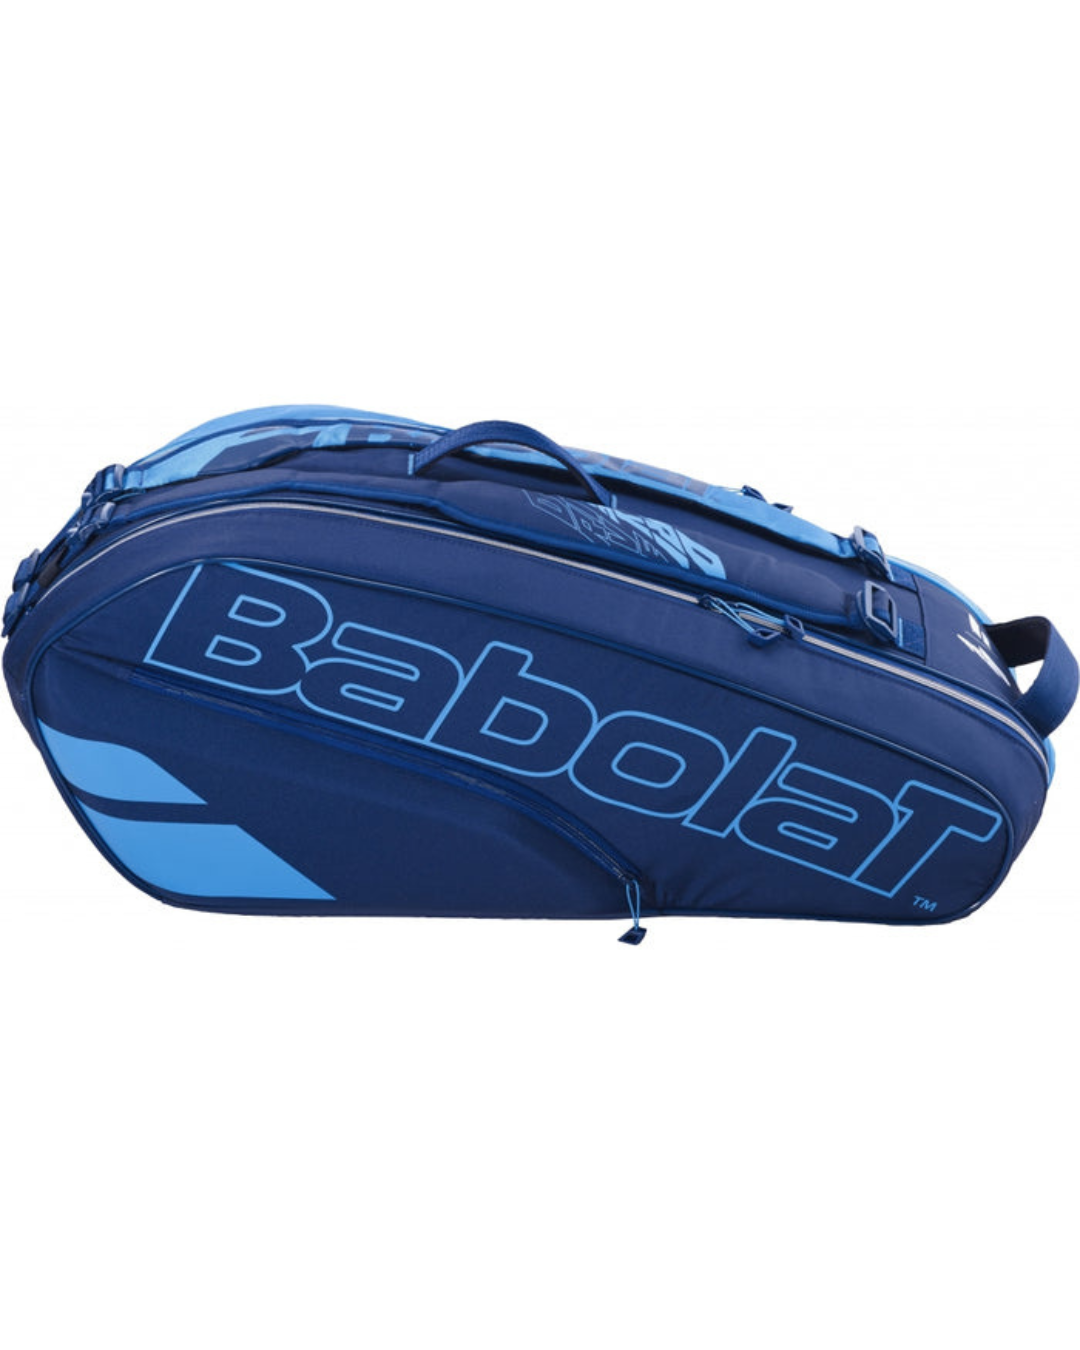 Babolat Pure Drive Blue RH6